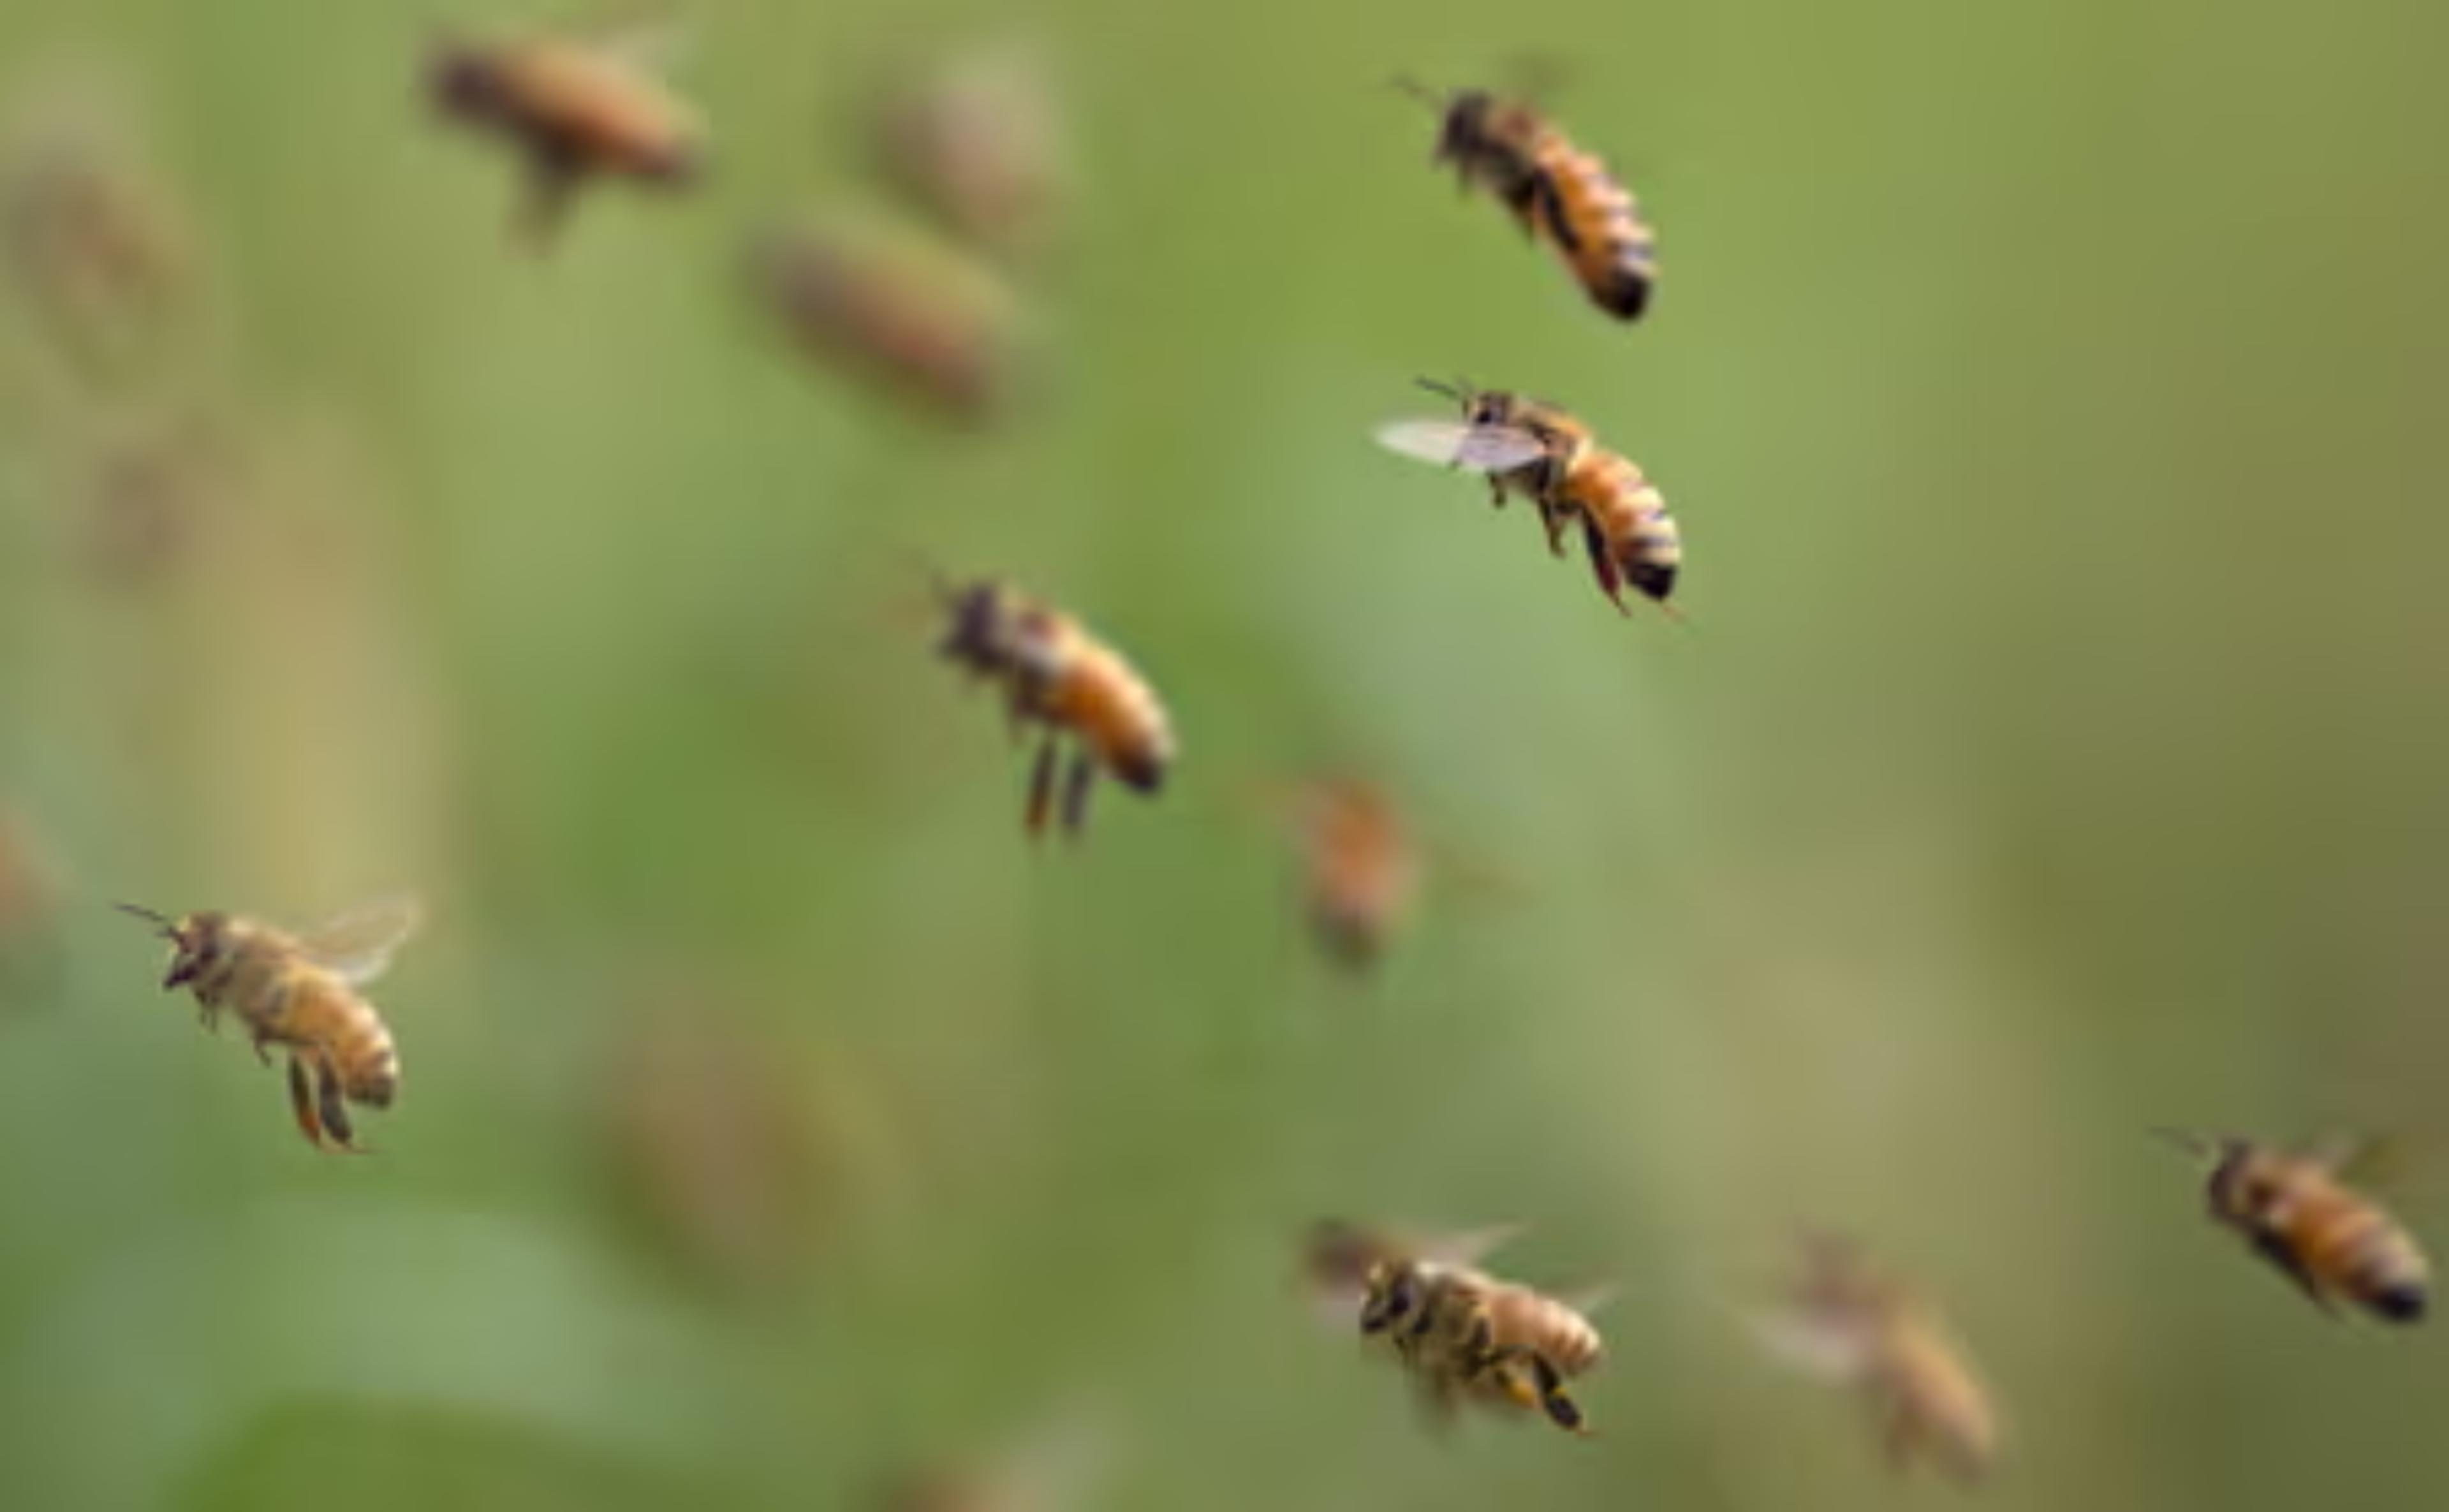 Burhanpur – टूट पड़ी हजारों मधु मक्खियां, 12 लोग भर्ती, 5 की हालत गंभीर,
बुरहानपुर में मची भगदड़